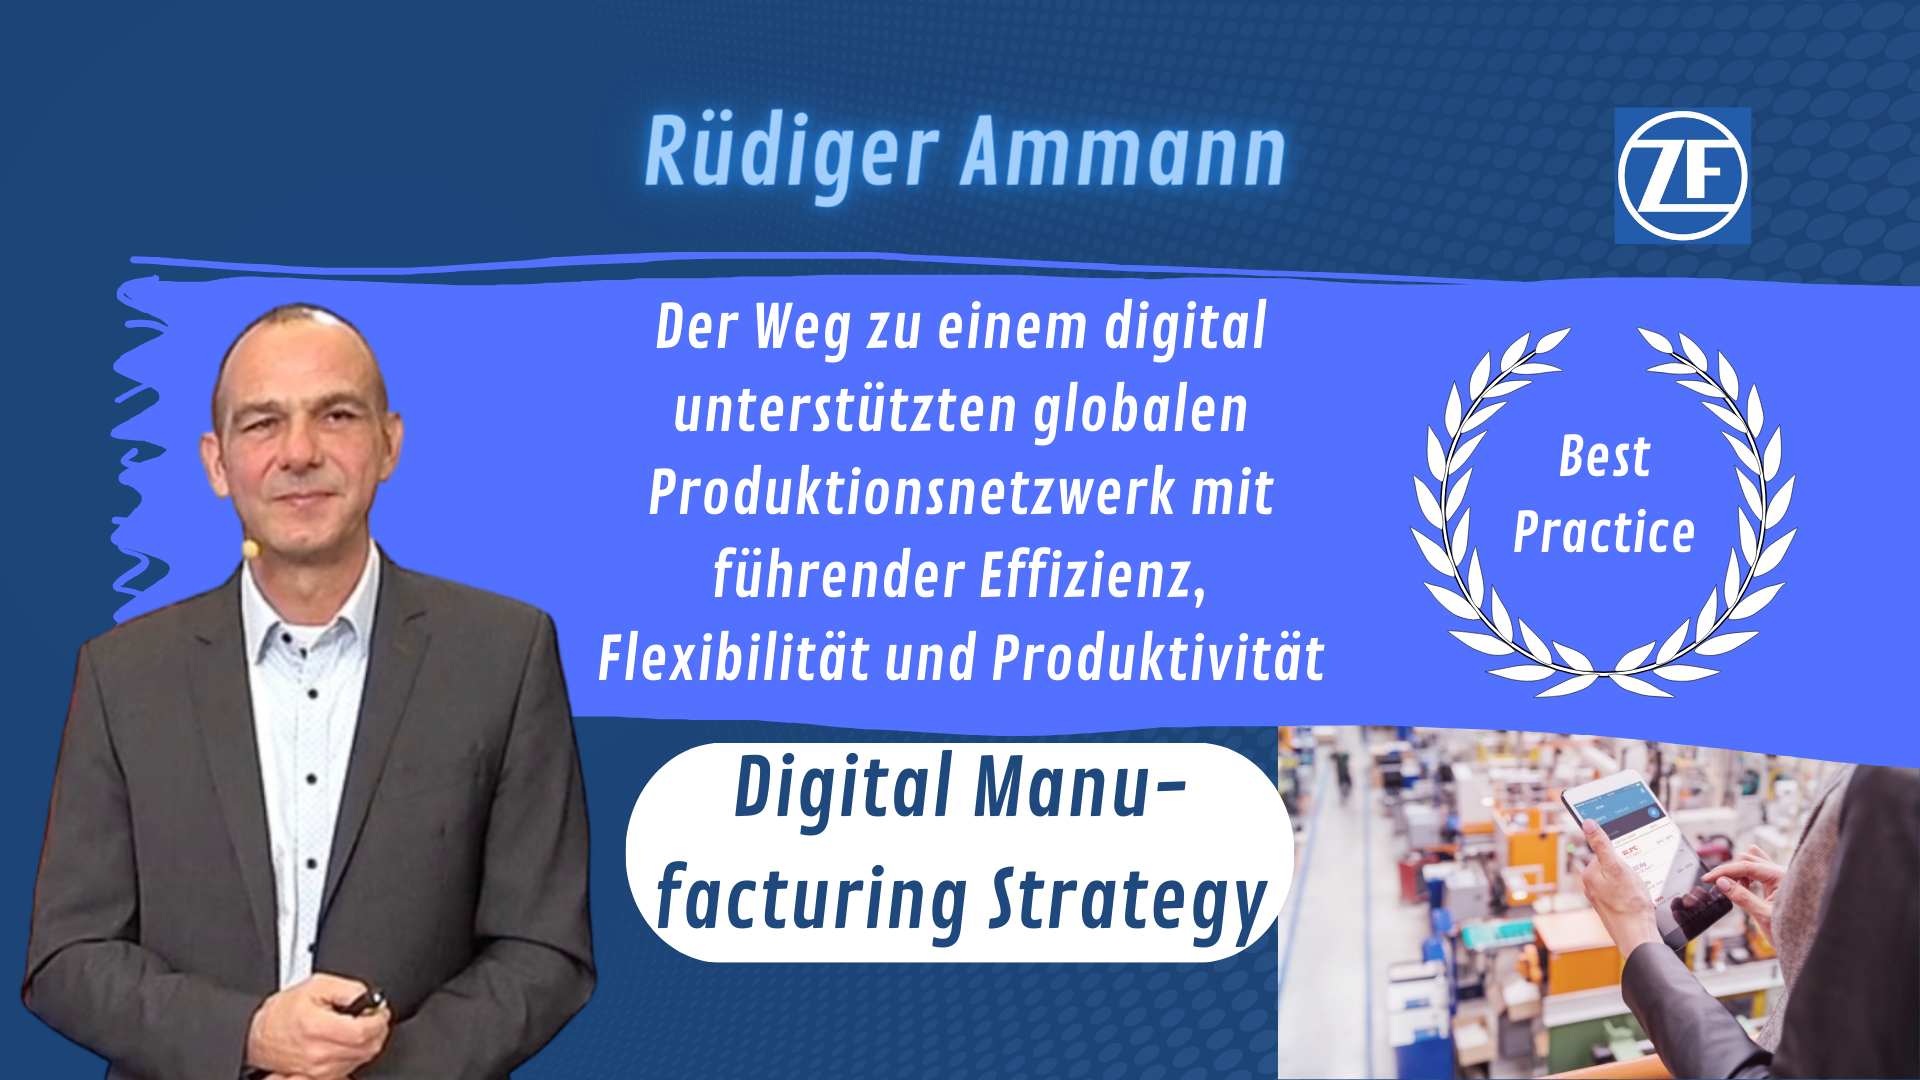 DIGITAL - Digital manufacturing strategy with Rüdiger Ammann